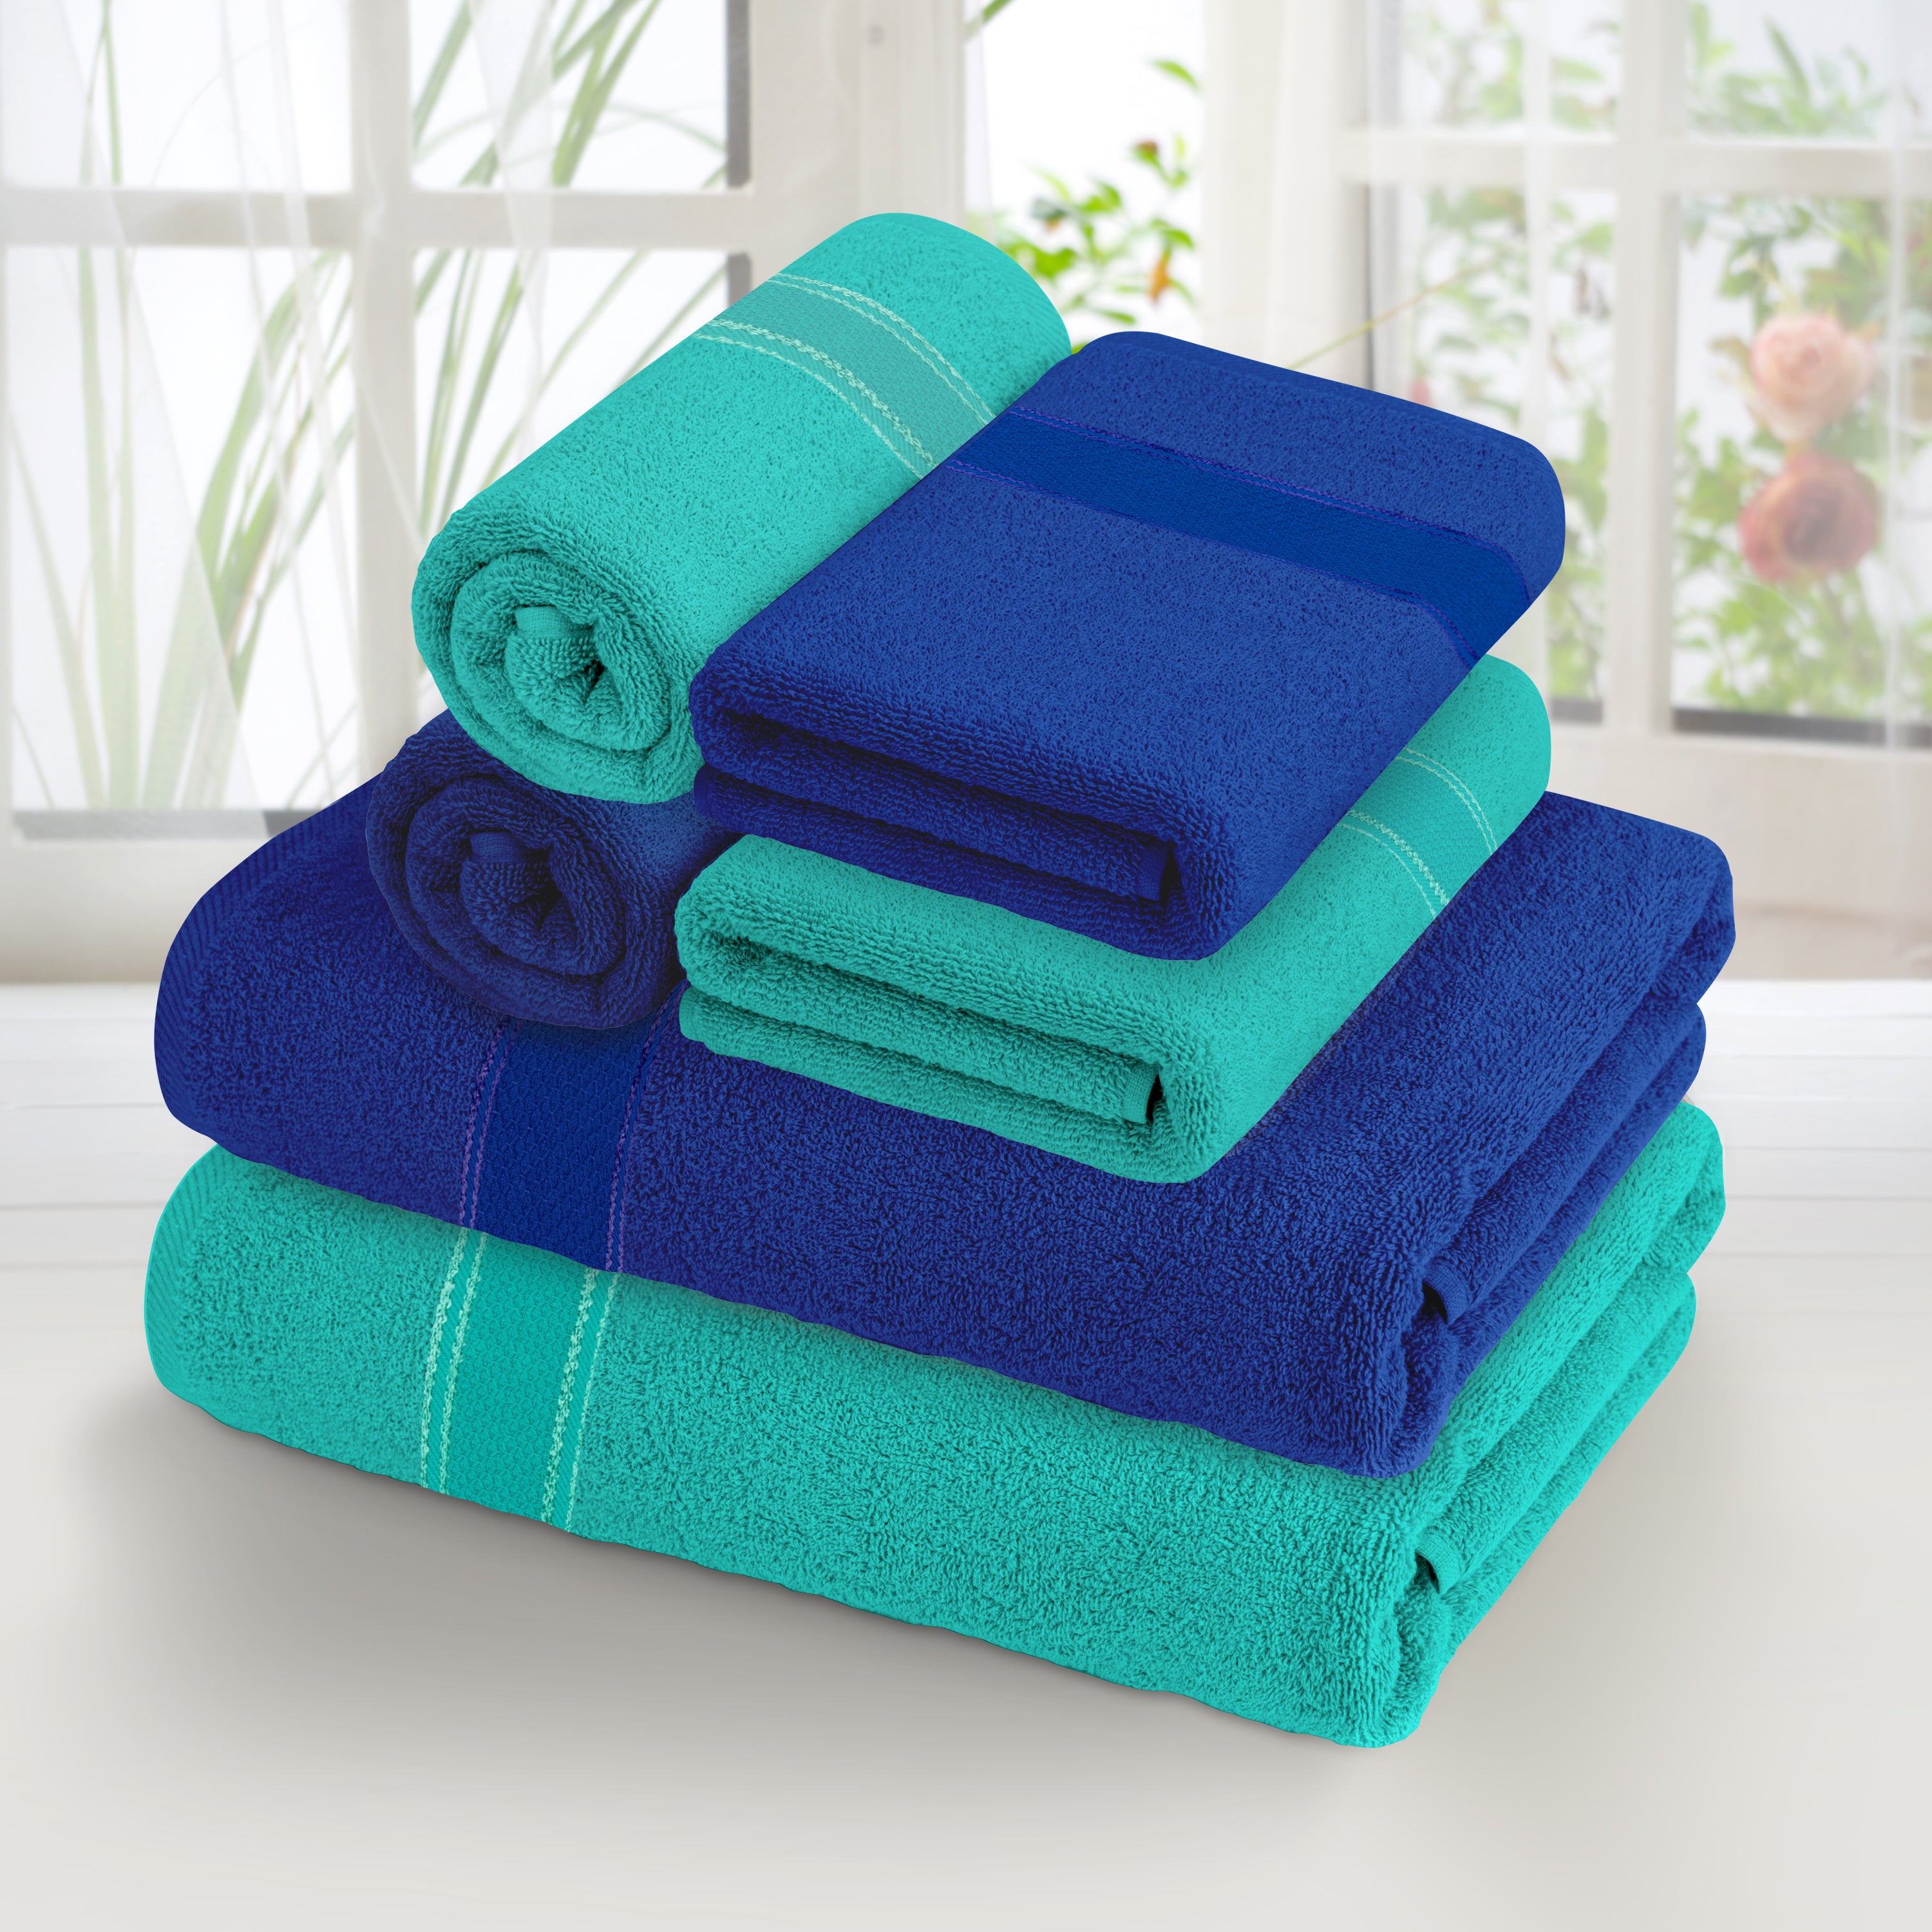 Aquacado 2 Pc Bath & 4 Pc Hand Towel Set of 6 Turq Blue & Irish Blue